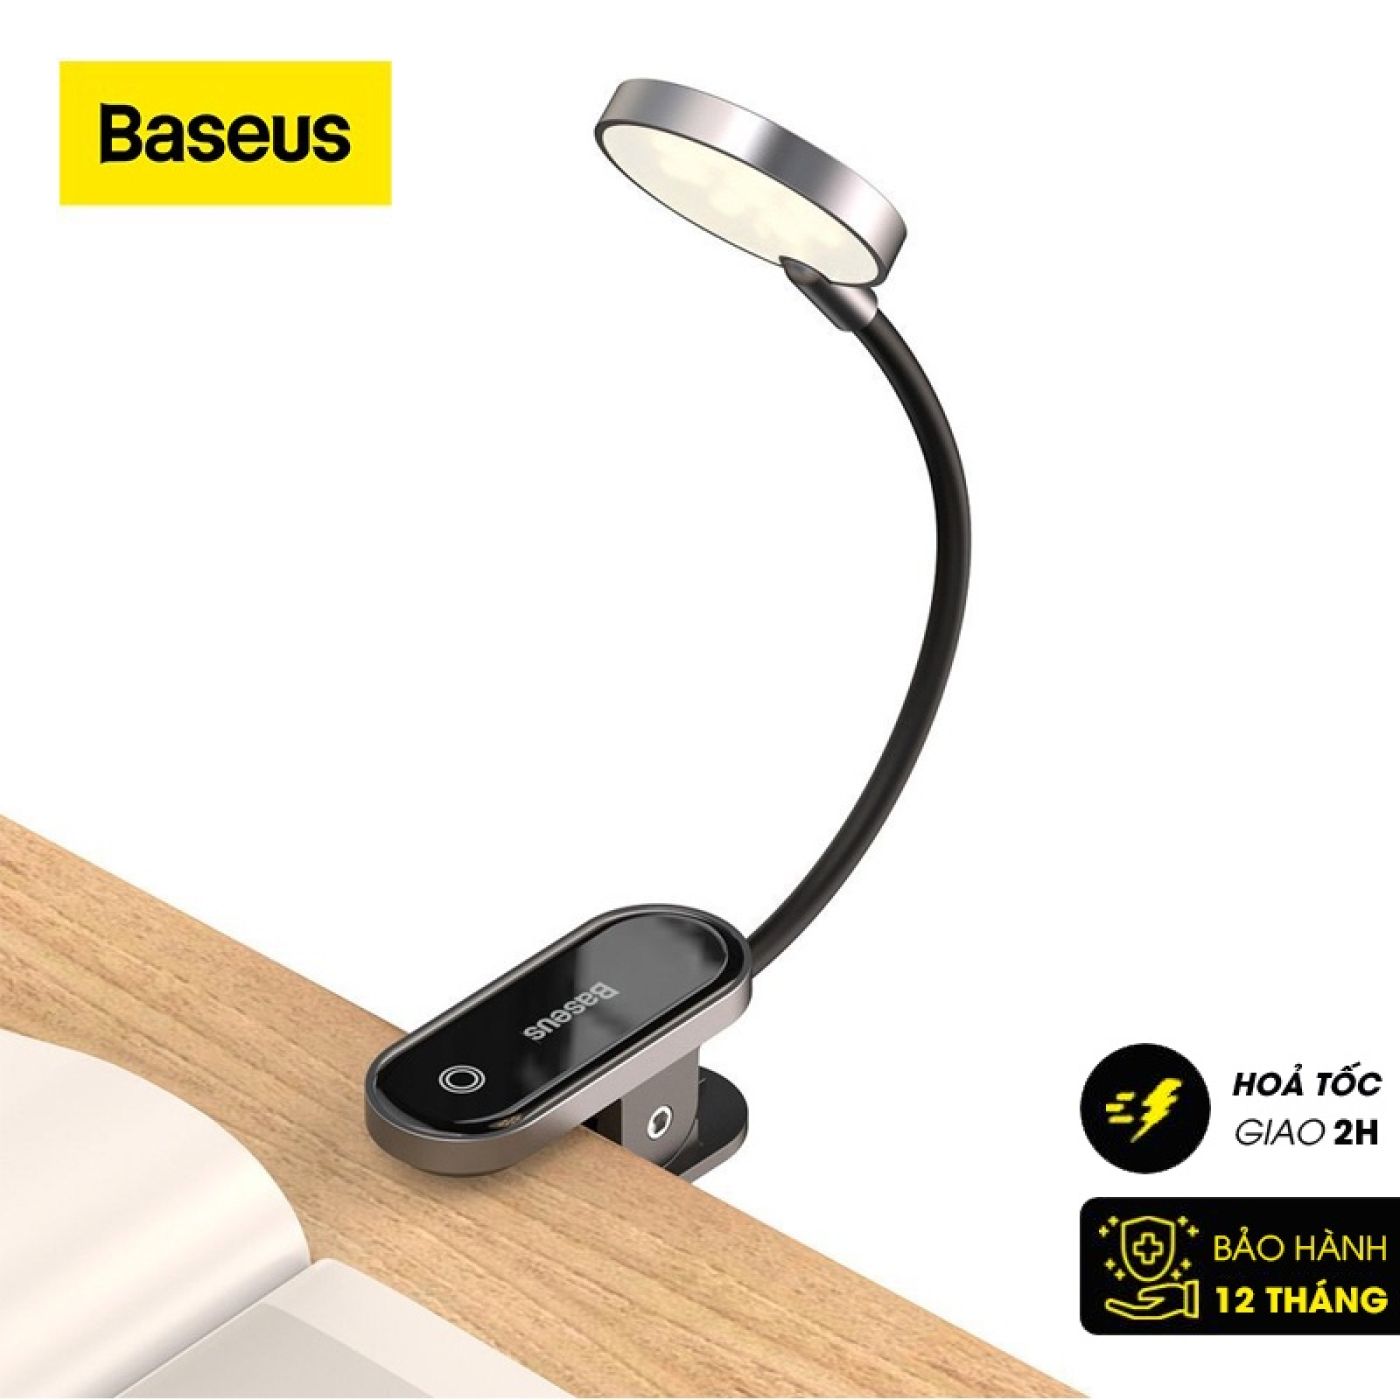 Đèn đọc sách mini, pin sạc tiện dụng Baseus Comfort Reading Mini Clip Lamp ( Dịu mắt, chân kẹp, 3 mứ